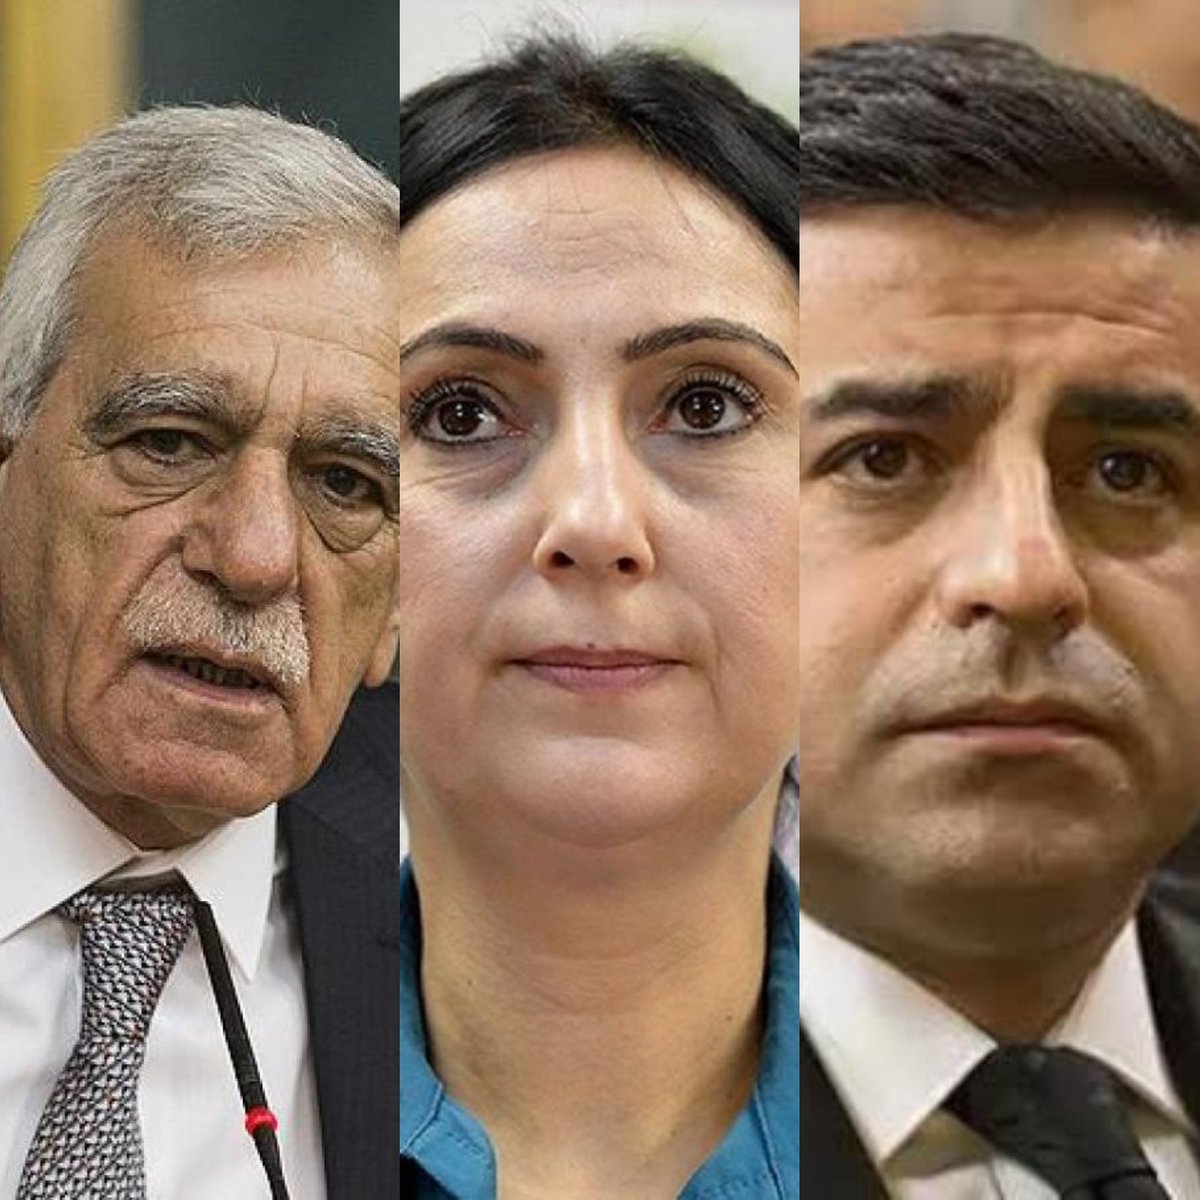 İçeridekilere Türkiye Cumhuriyeti Devleti'nin selamı var dersiniz. Ahmet Türk, Figen Yüksekdağ ve Selahattin Demirtaş'ı üç evetle uğurluyoruz.